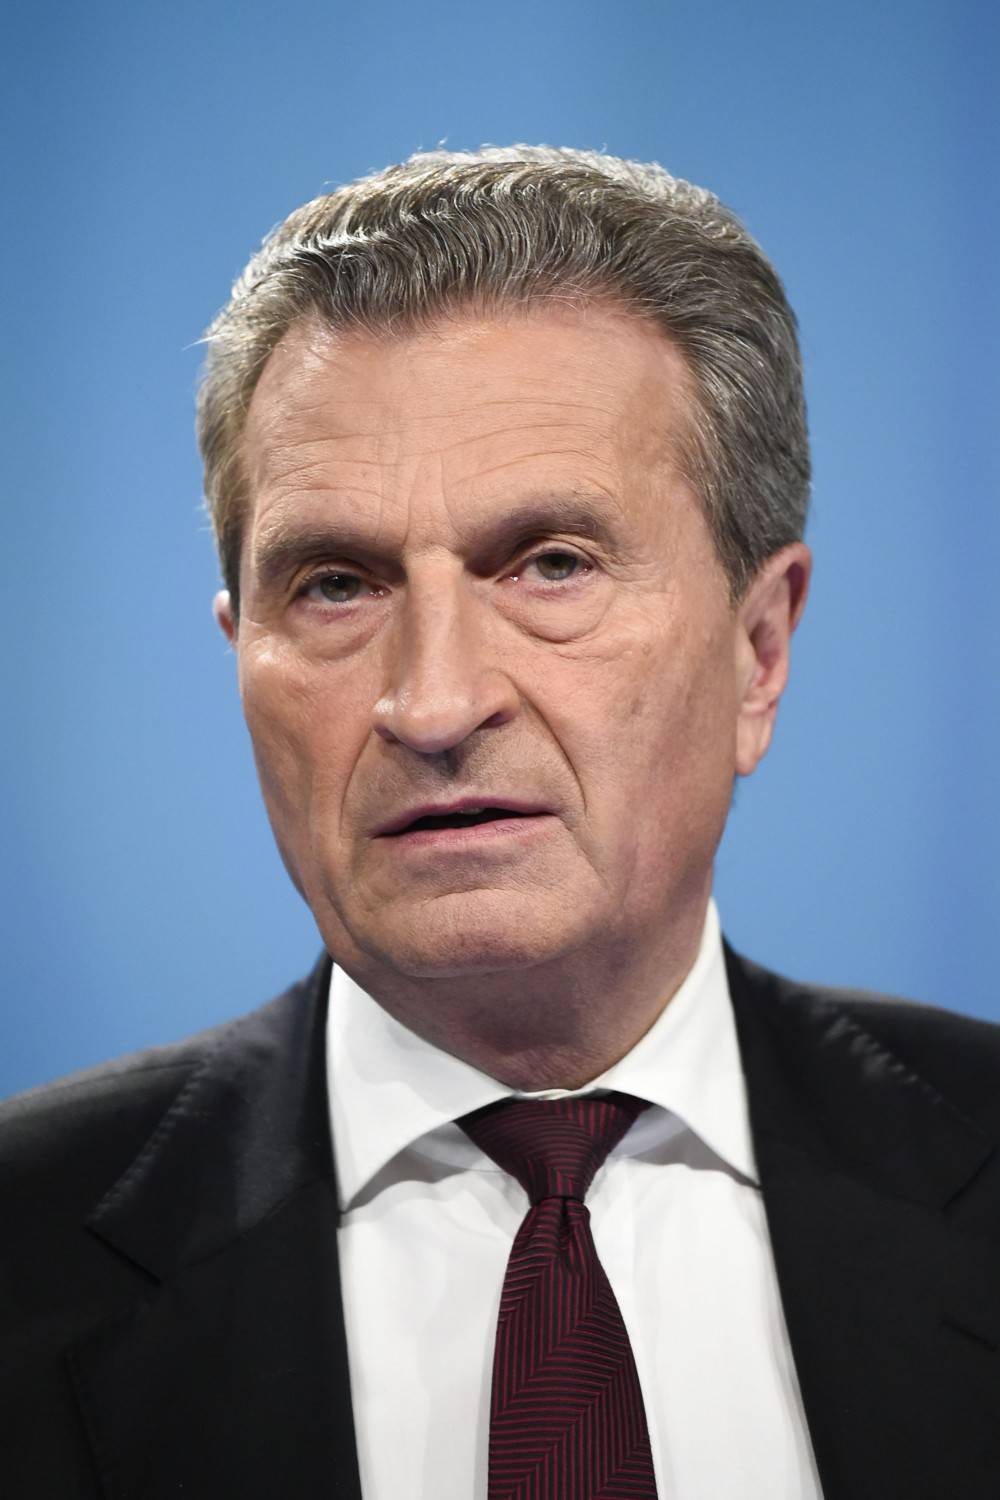 Oettinger ora chiede scusa: "Non volevo essere irrispettoso"